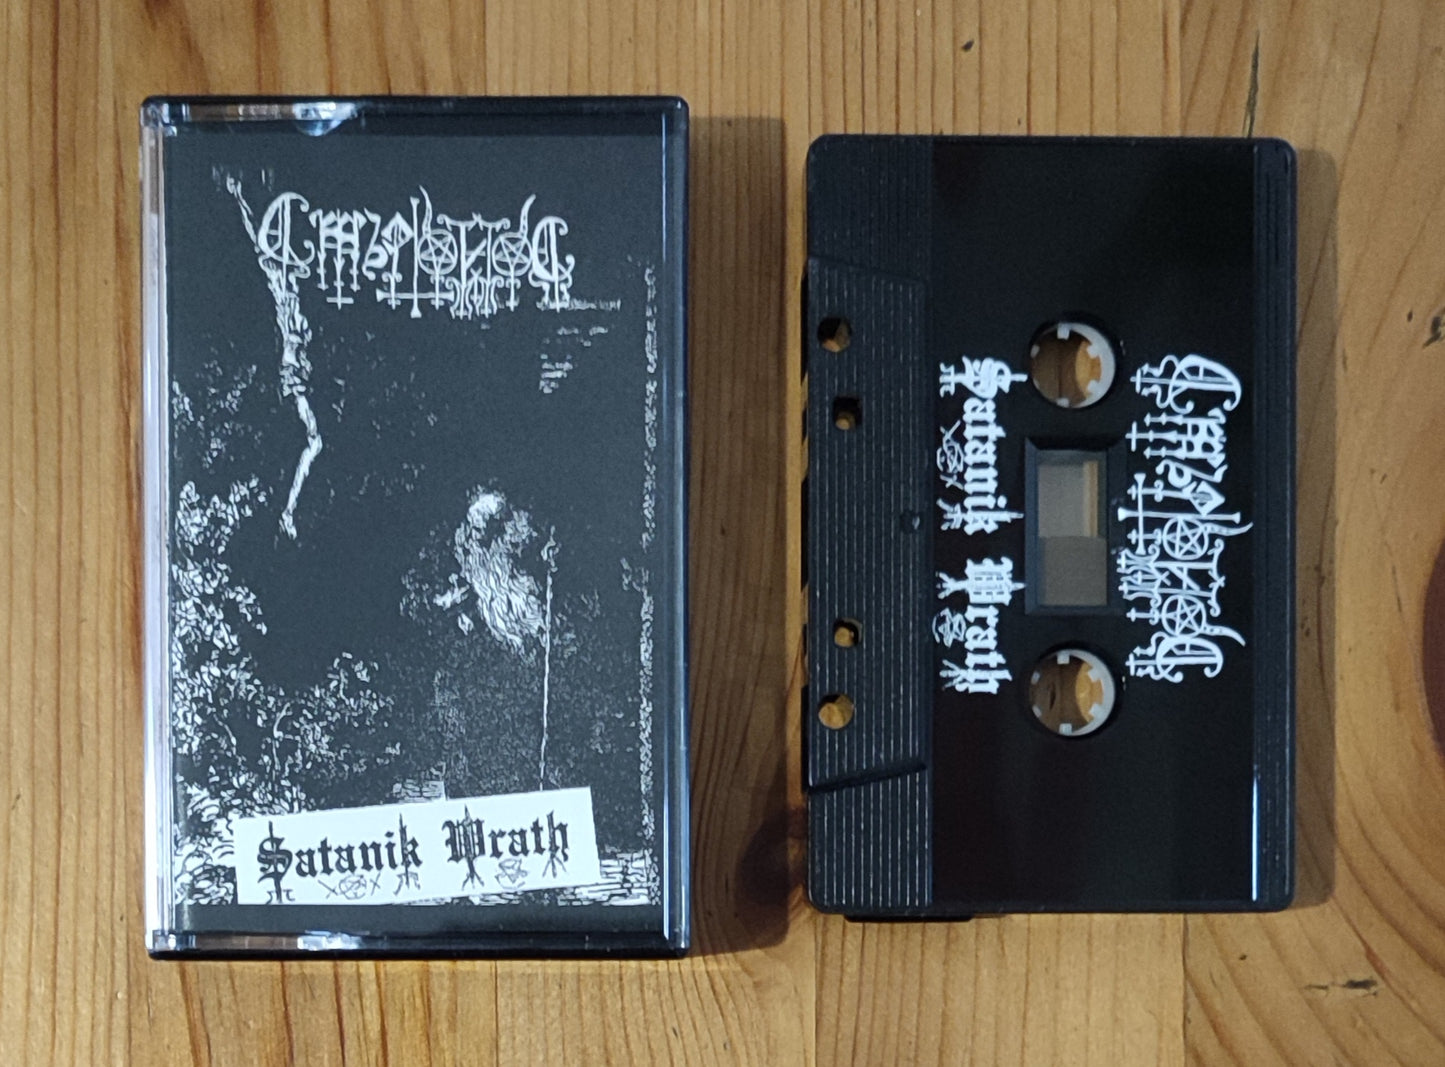 Smyrtonos (BG) "Satanik Wrath" - Pro tape